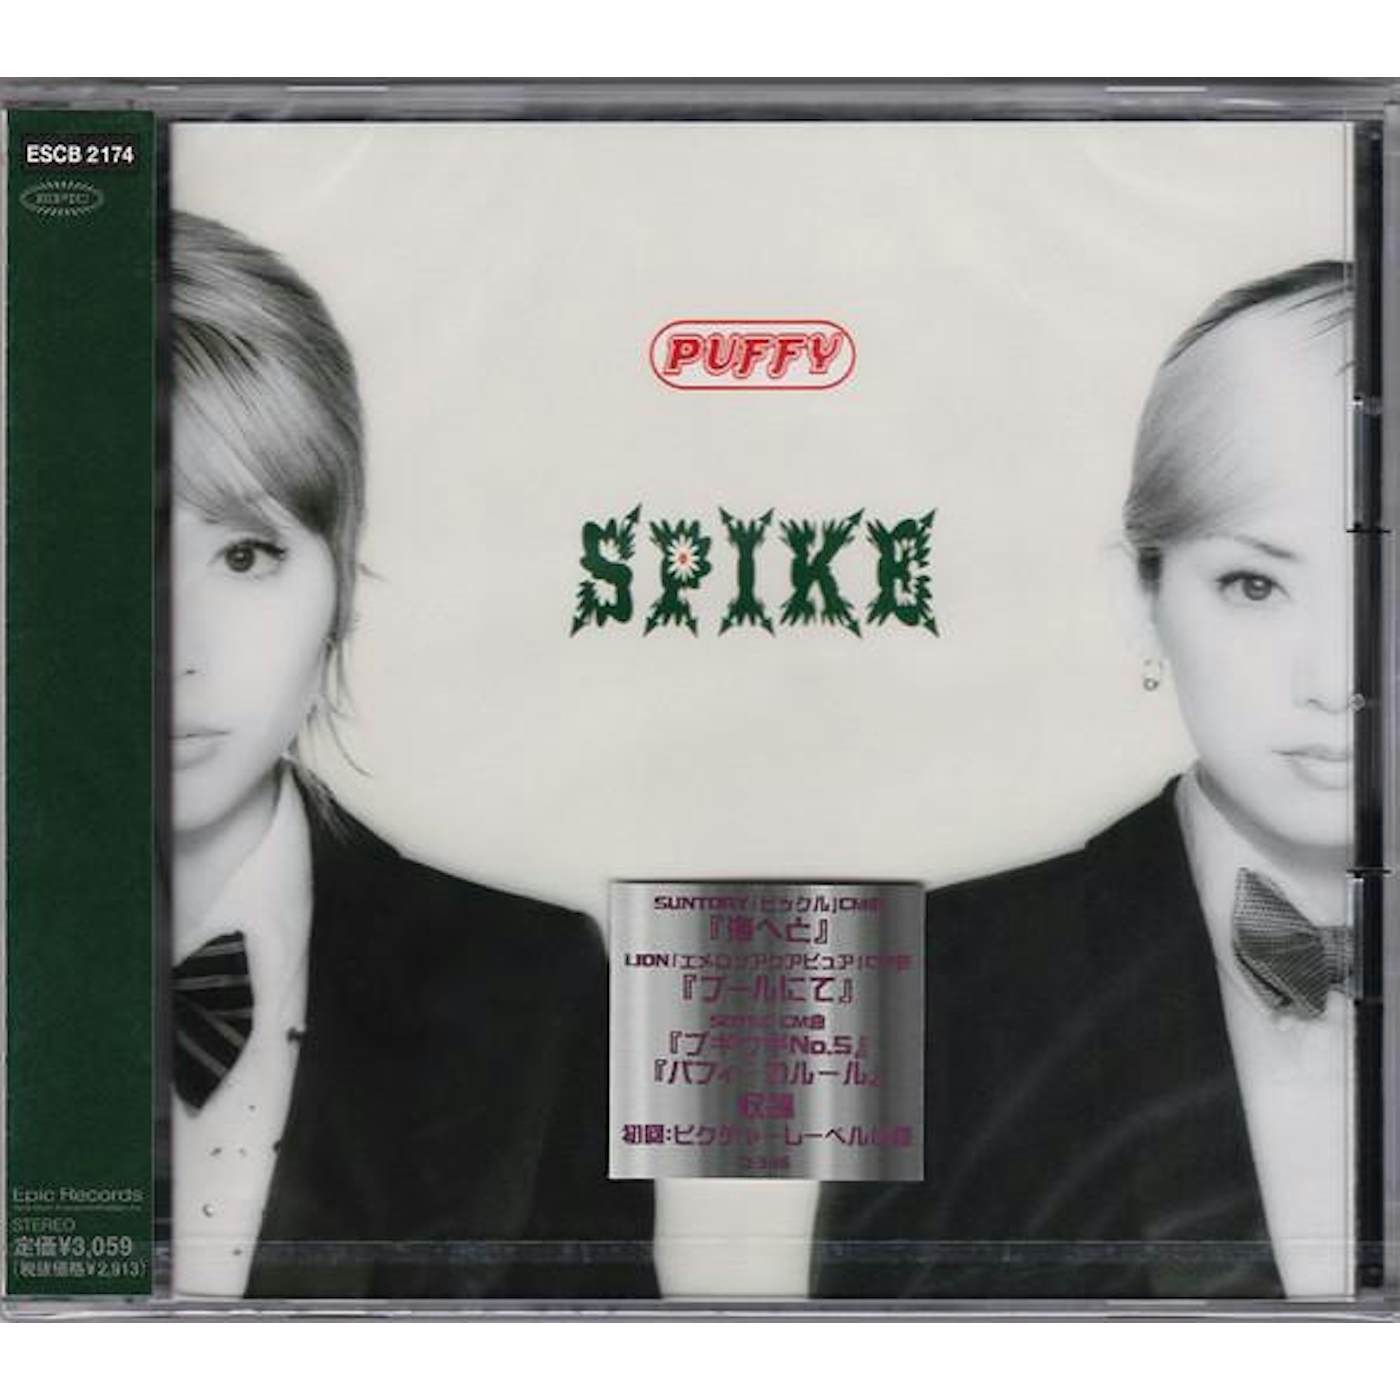 Puffy SPIKE CD